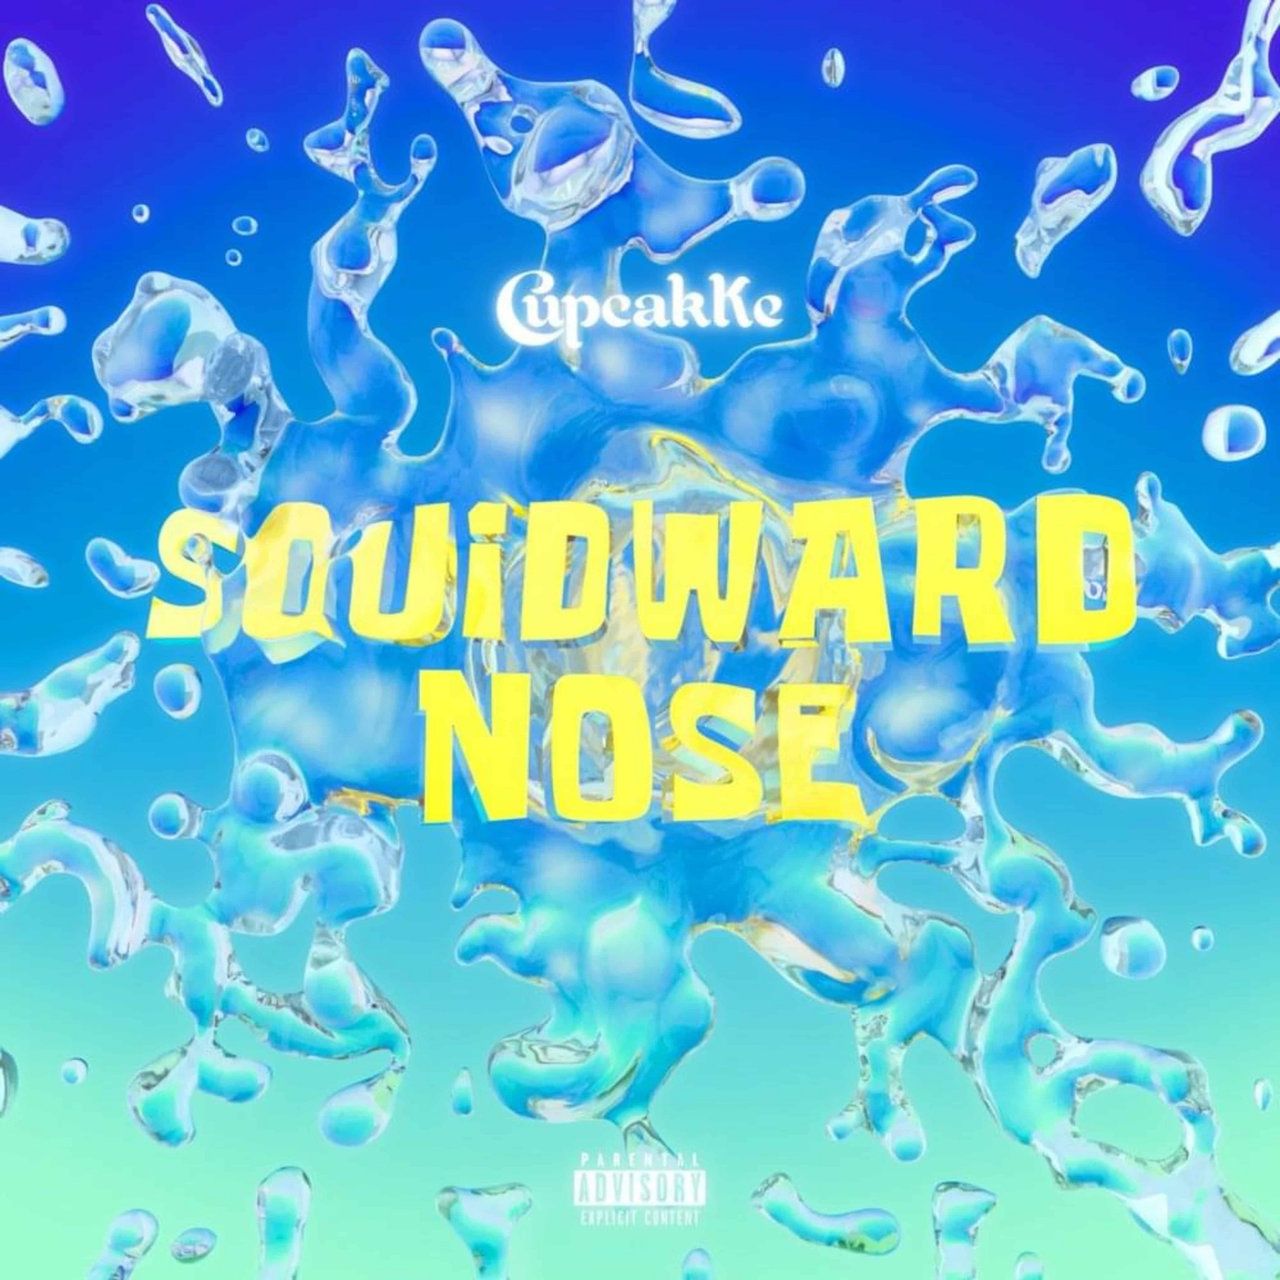 CupcakKe — Squidward Nose cover artwork